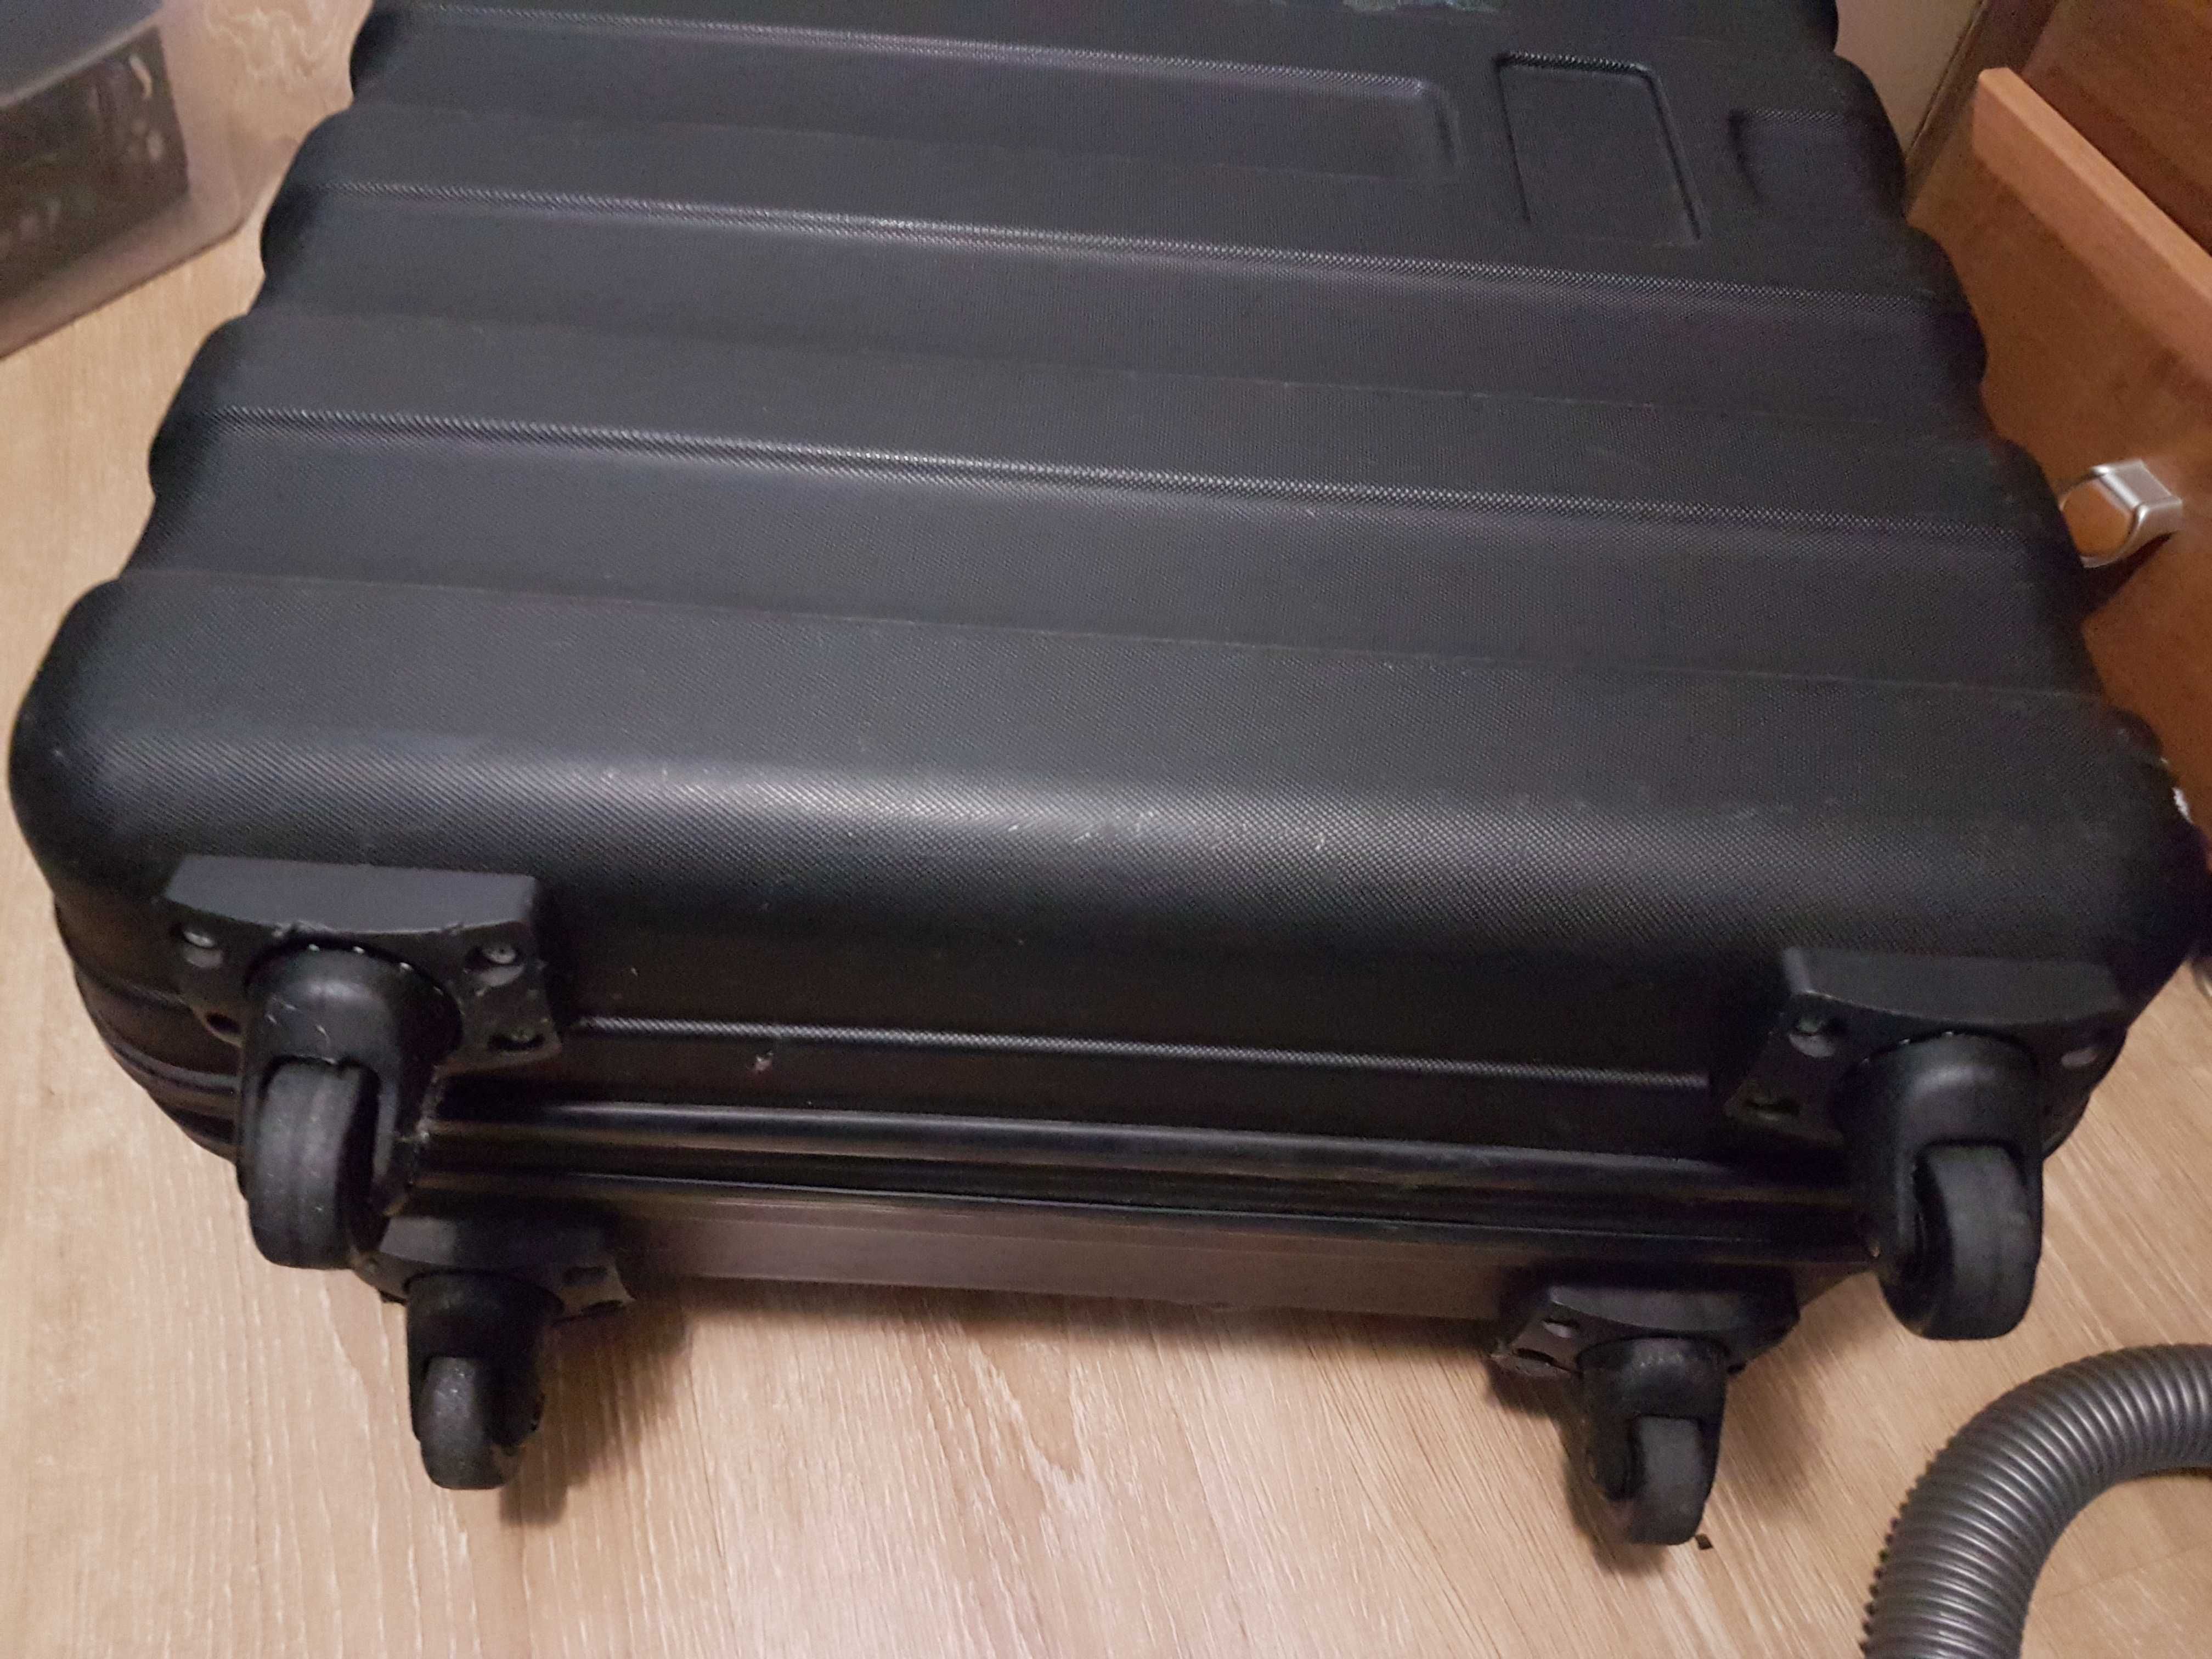 Dron DJI Inspire 1 zestaw z walizką